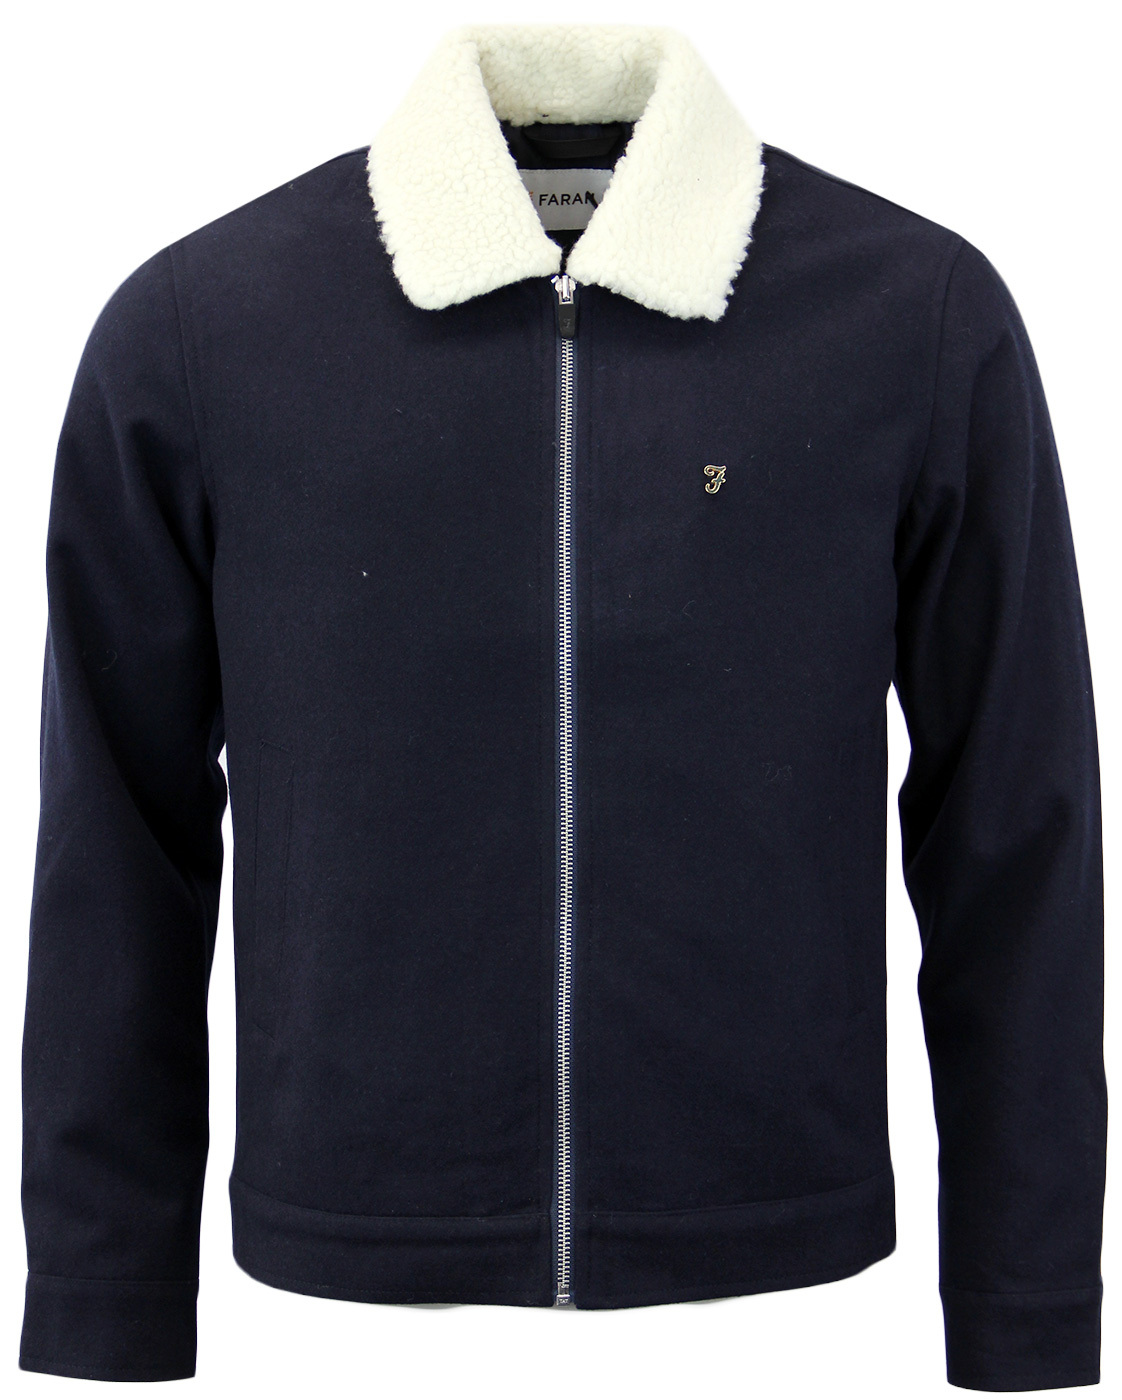 Otley FARAH Retro Mod Shearling Collar Jacket (N)